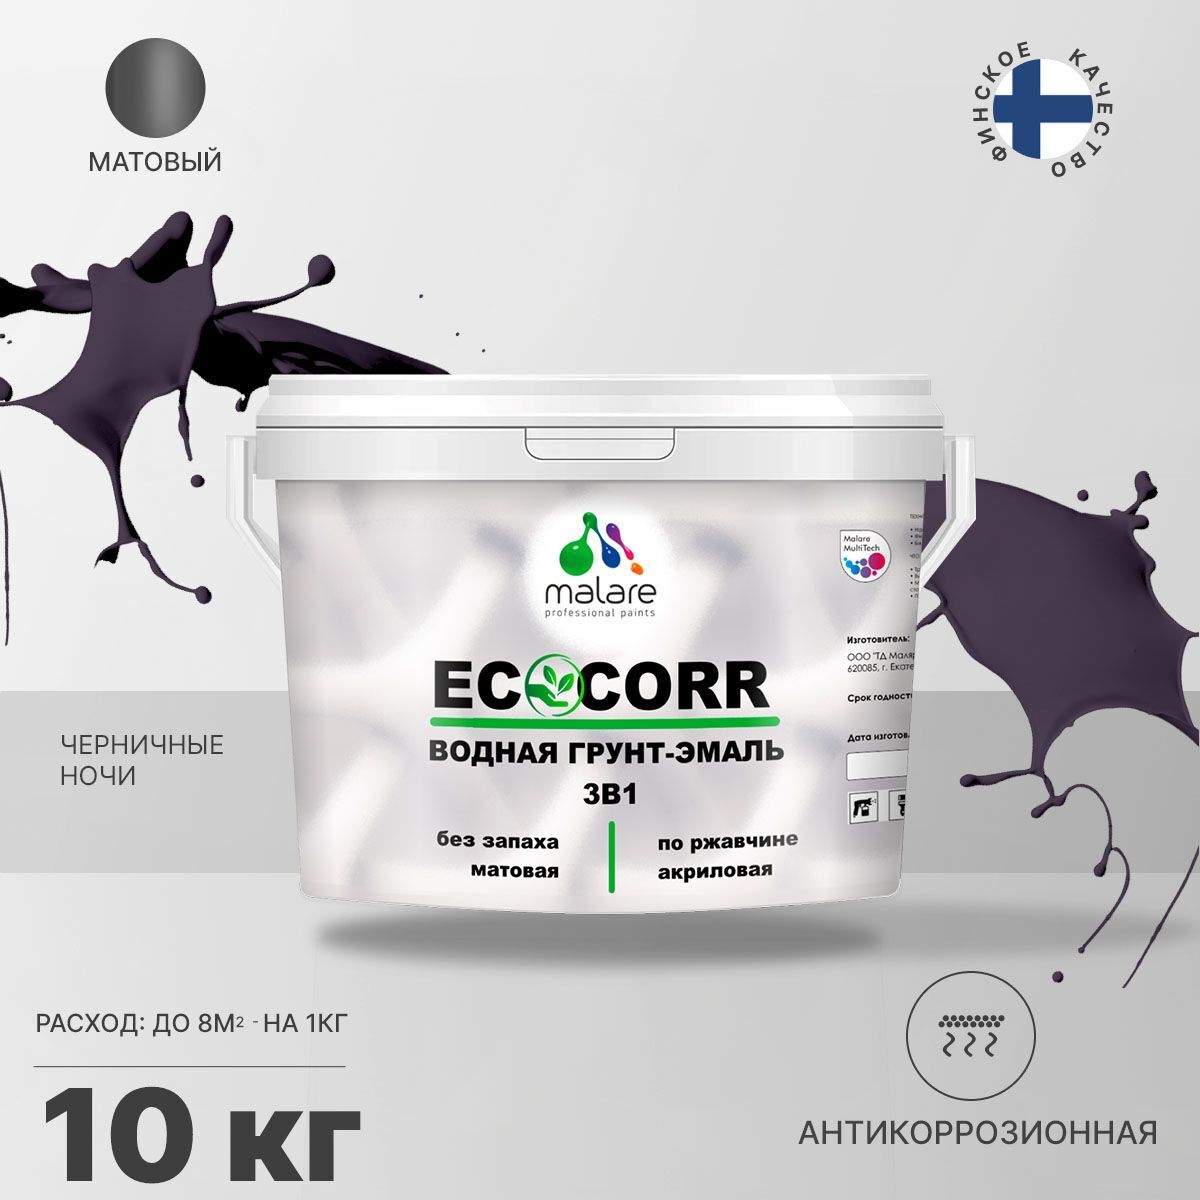 Грунт-эмаль 3 в 1 водная Malare EcoCorr антикоррозионная Акриловая, 10 кг черничные ночи